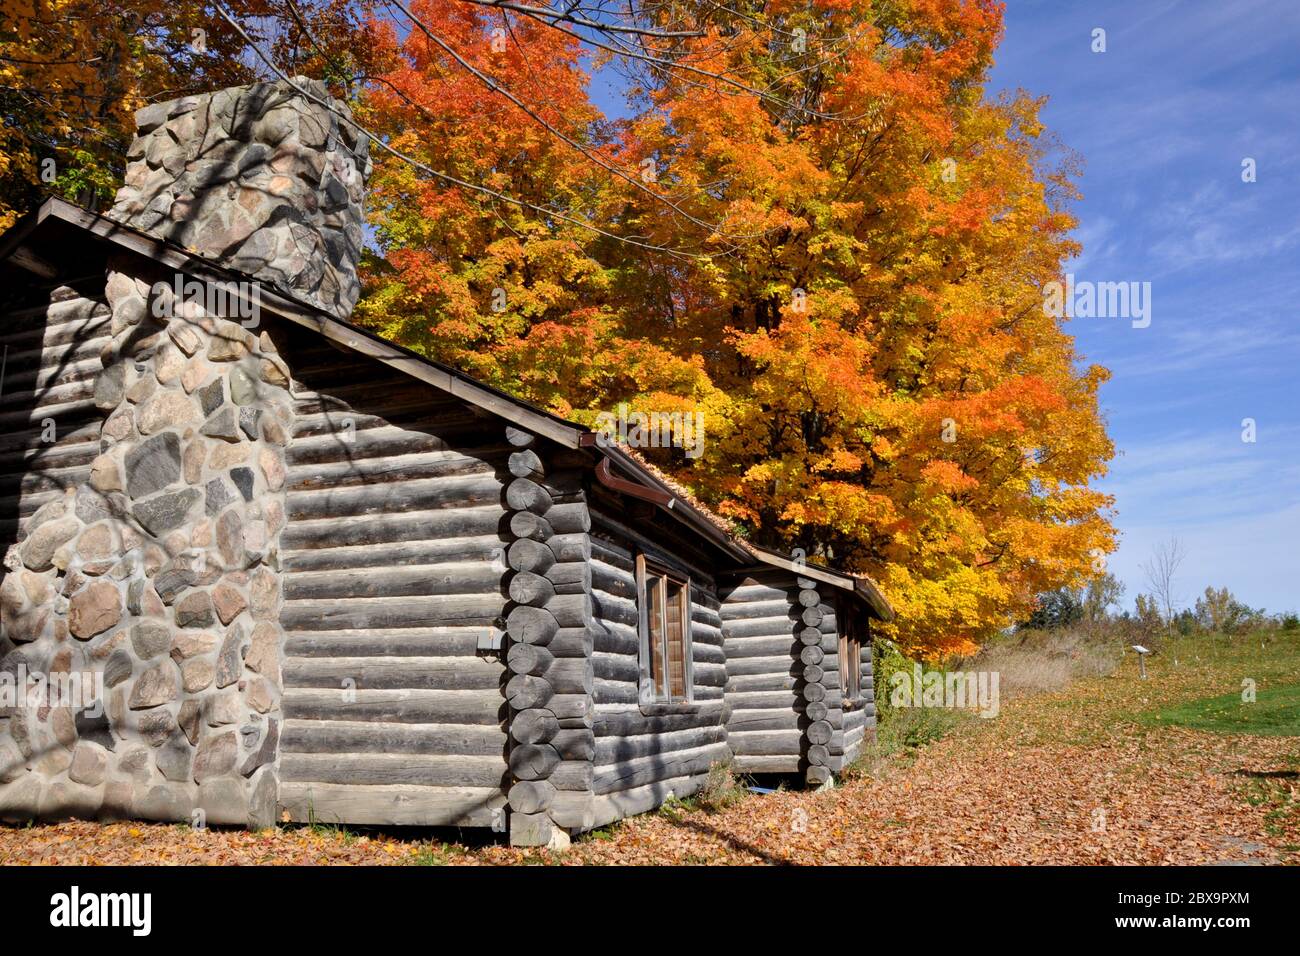 Ancienne maison en bois avec forêt d'érables, King City, Ontario, Canada. Banque D'Images